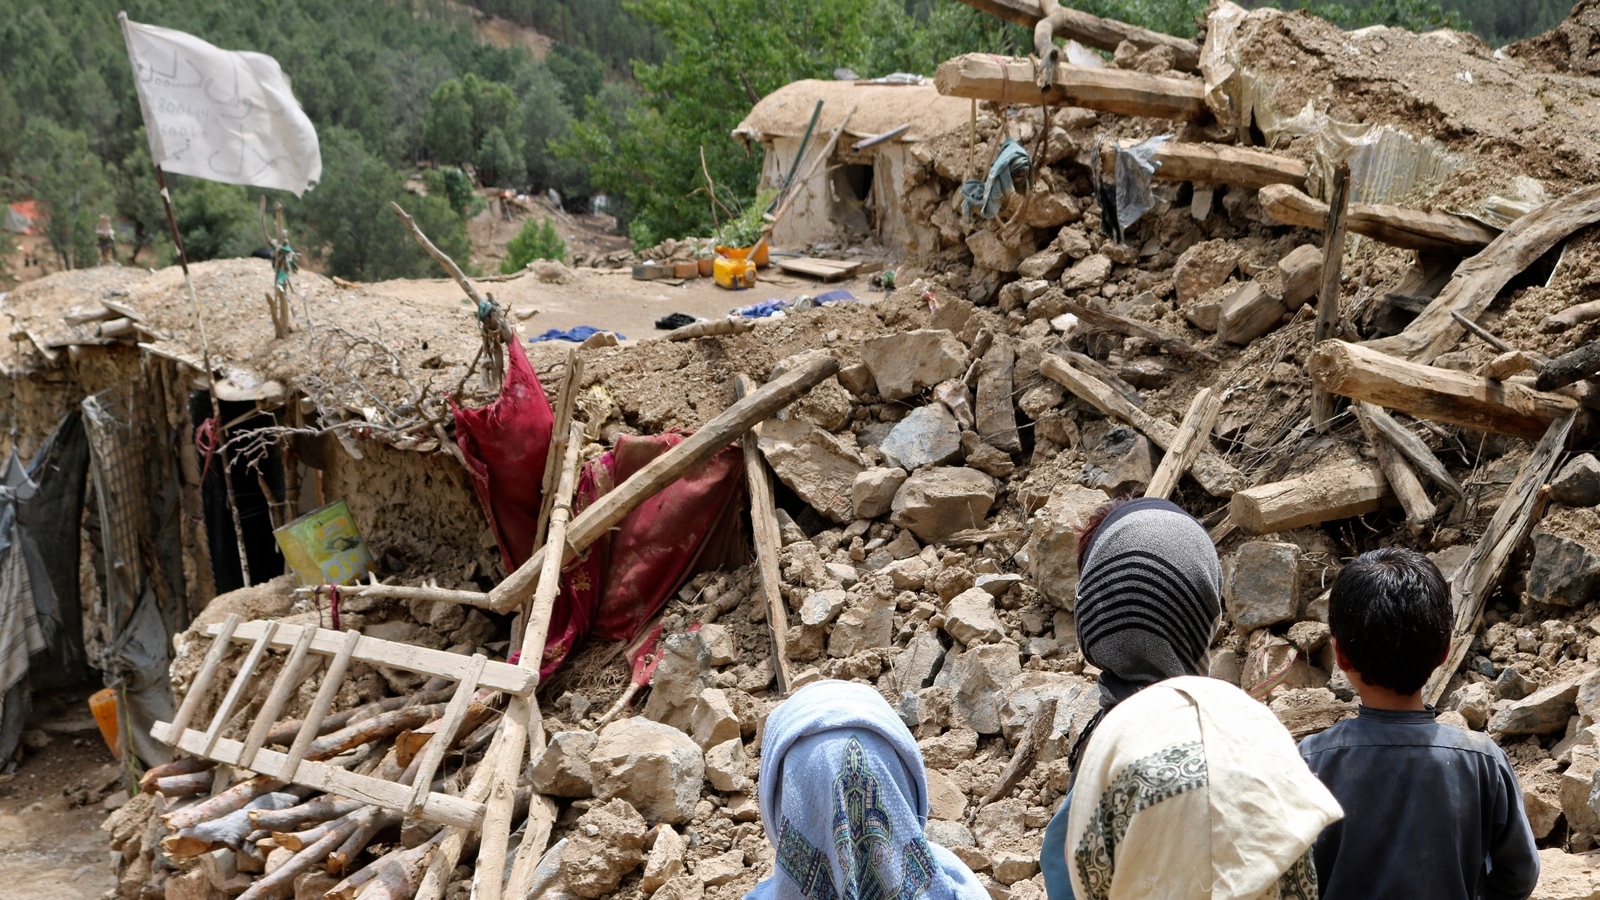 India mendukung Afghanistan, kata Modi saat gempa menewaskan sedikitnya 1.000 |  Berita India Terbaru